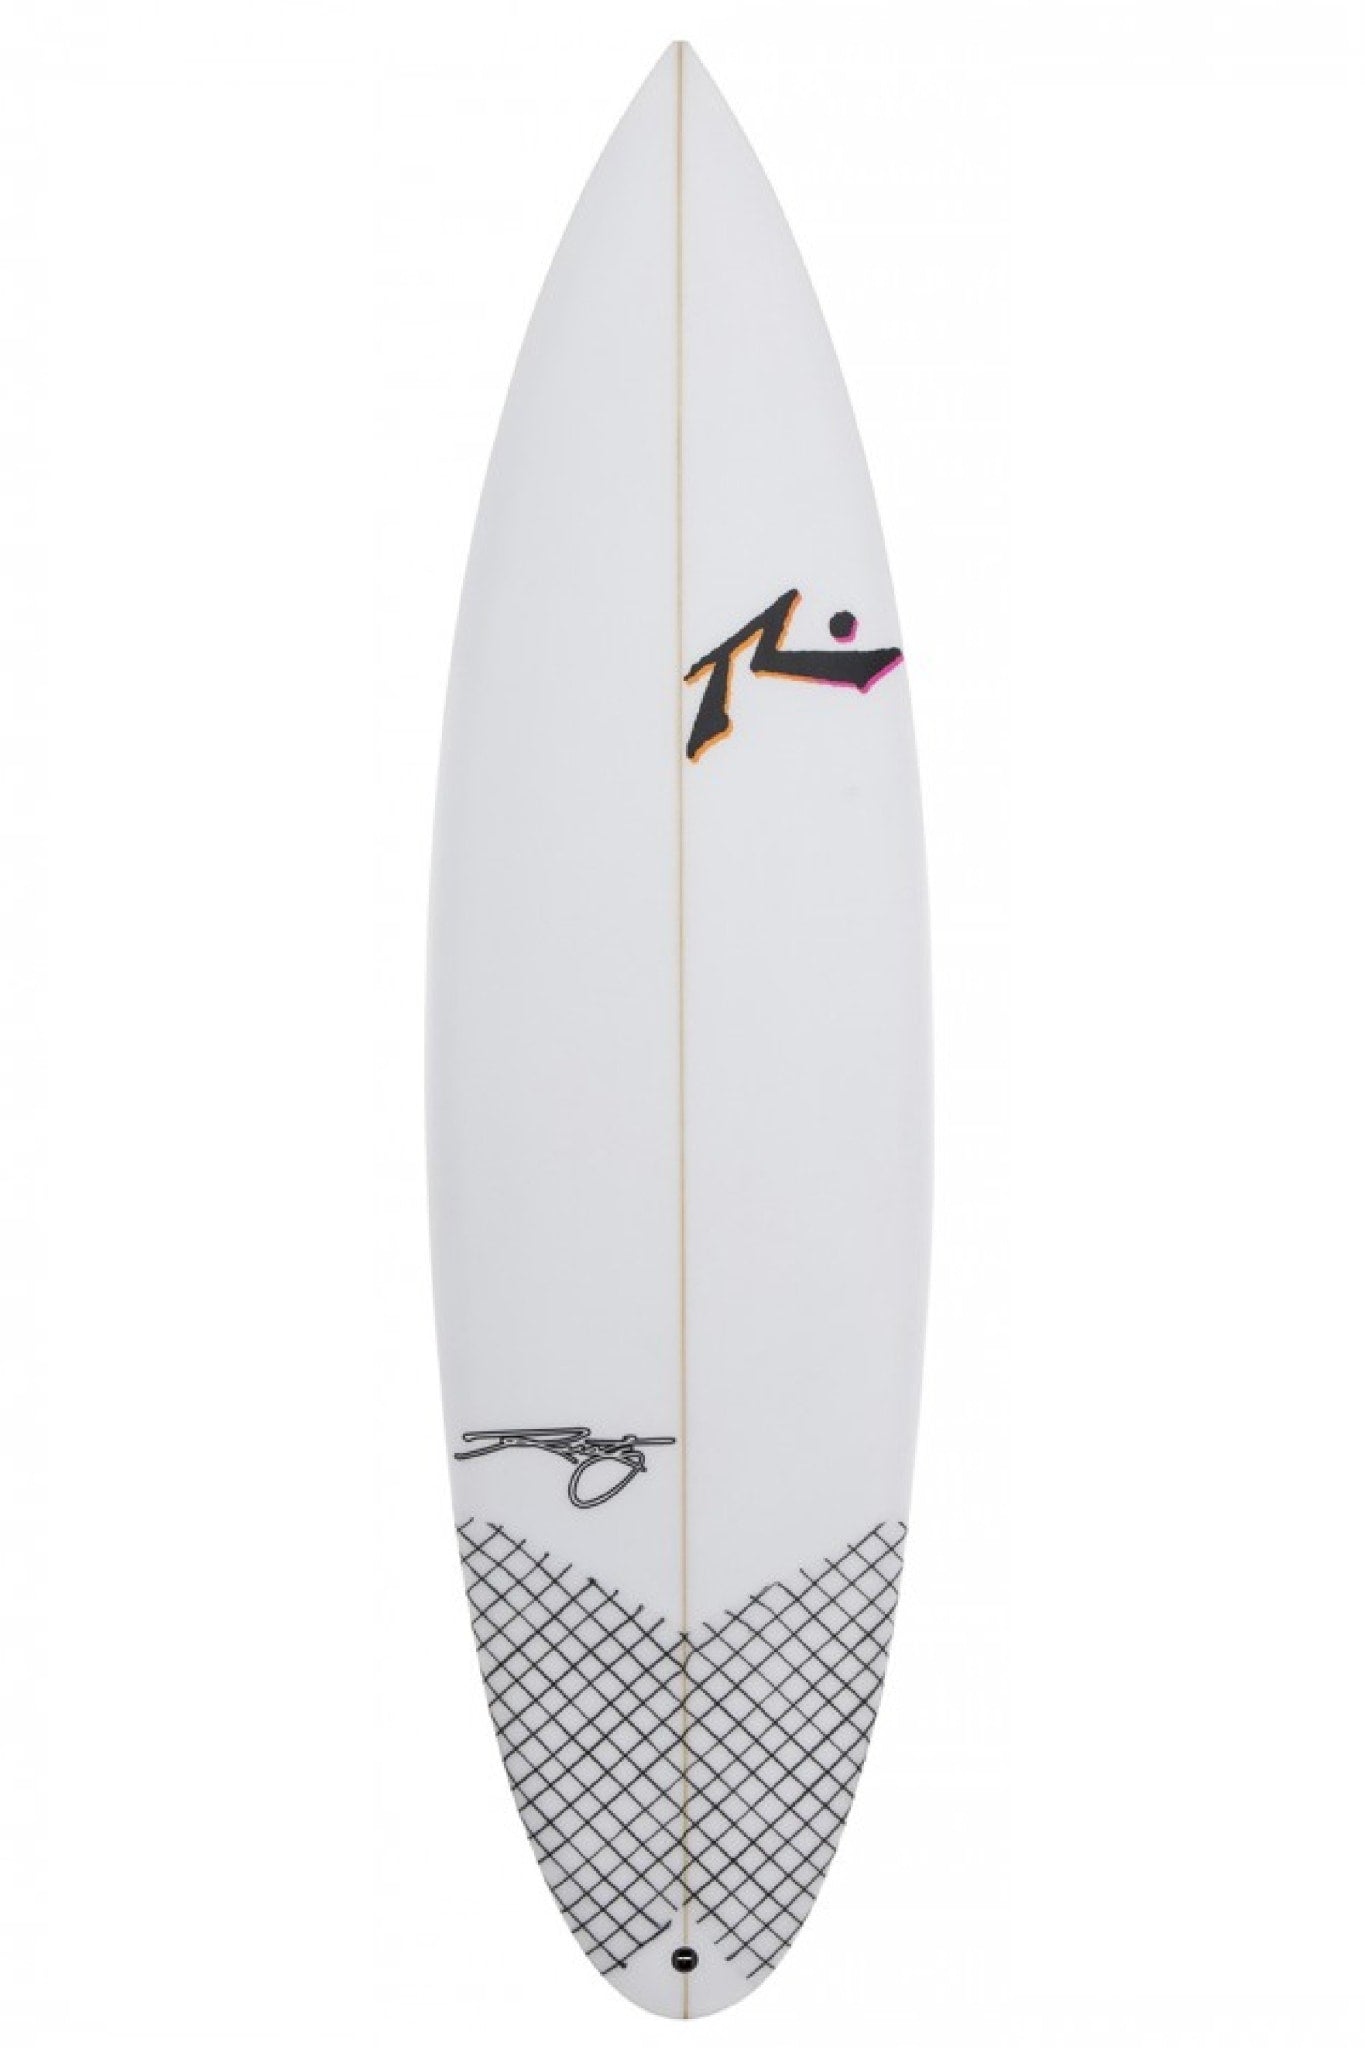 Kerrosover - Surfboards